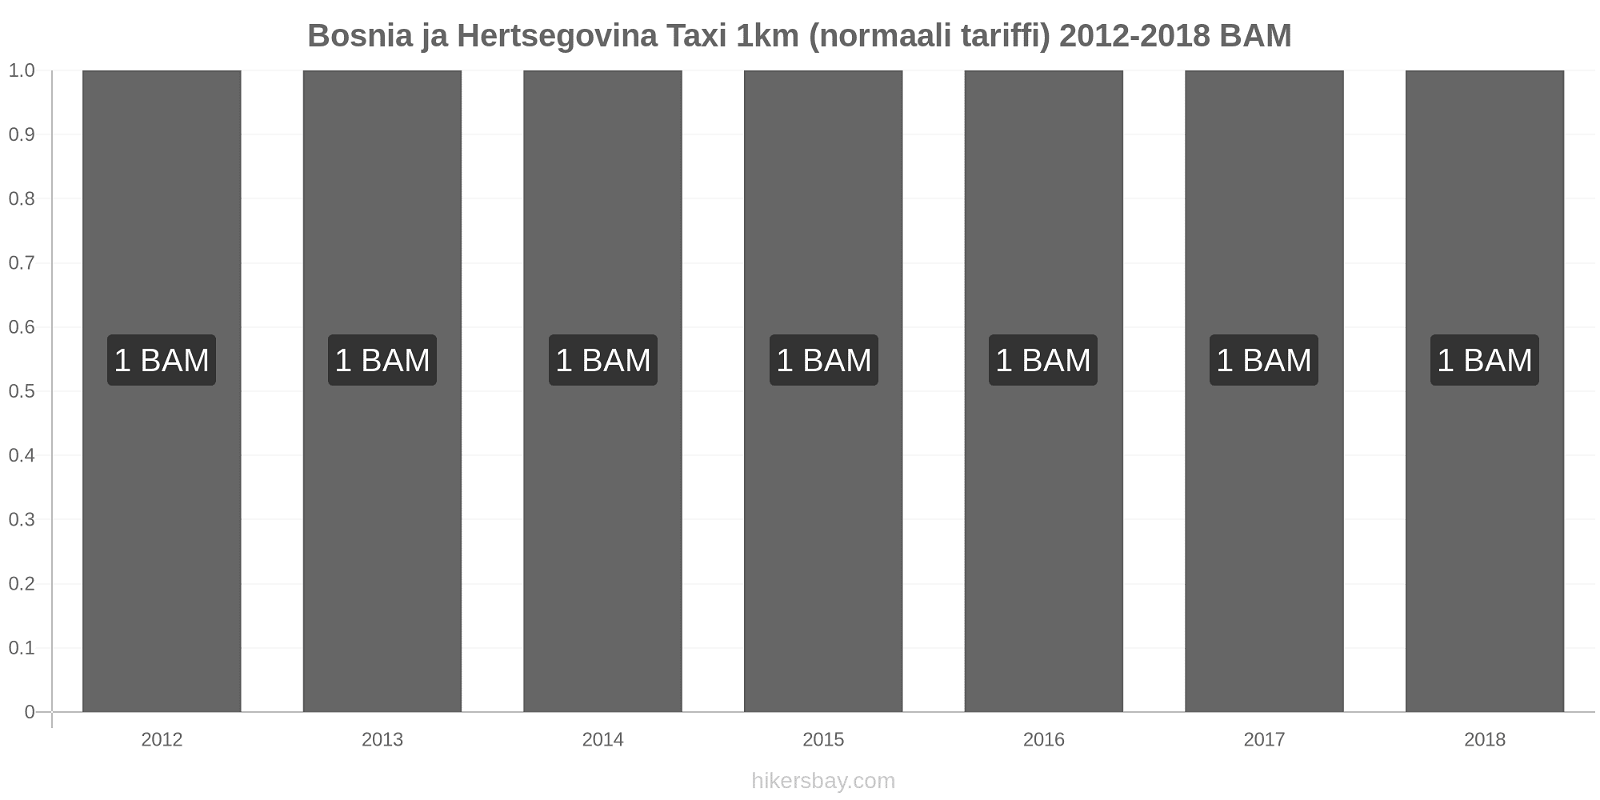 Bosnia ja Hertsegovina hintojen muutokset Taxi 1km (normaali tariffi) hikersbay.com